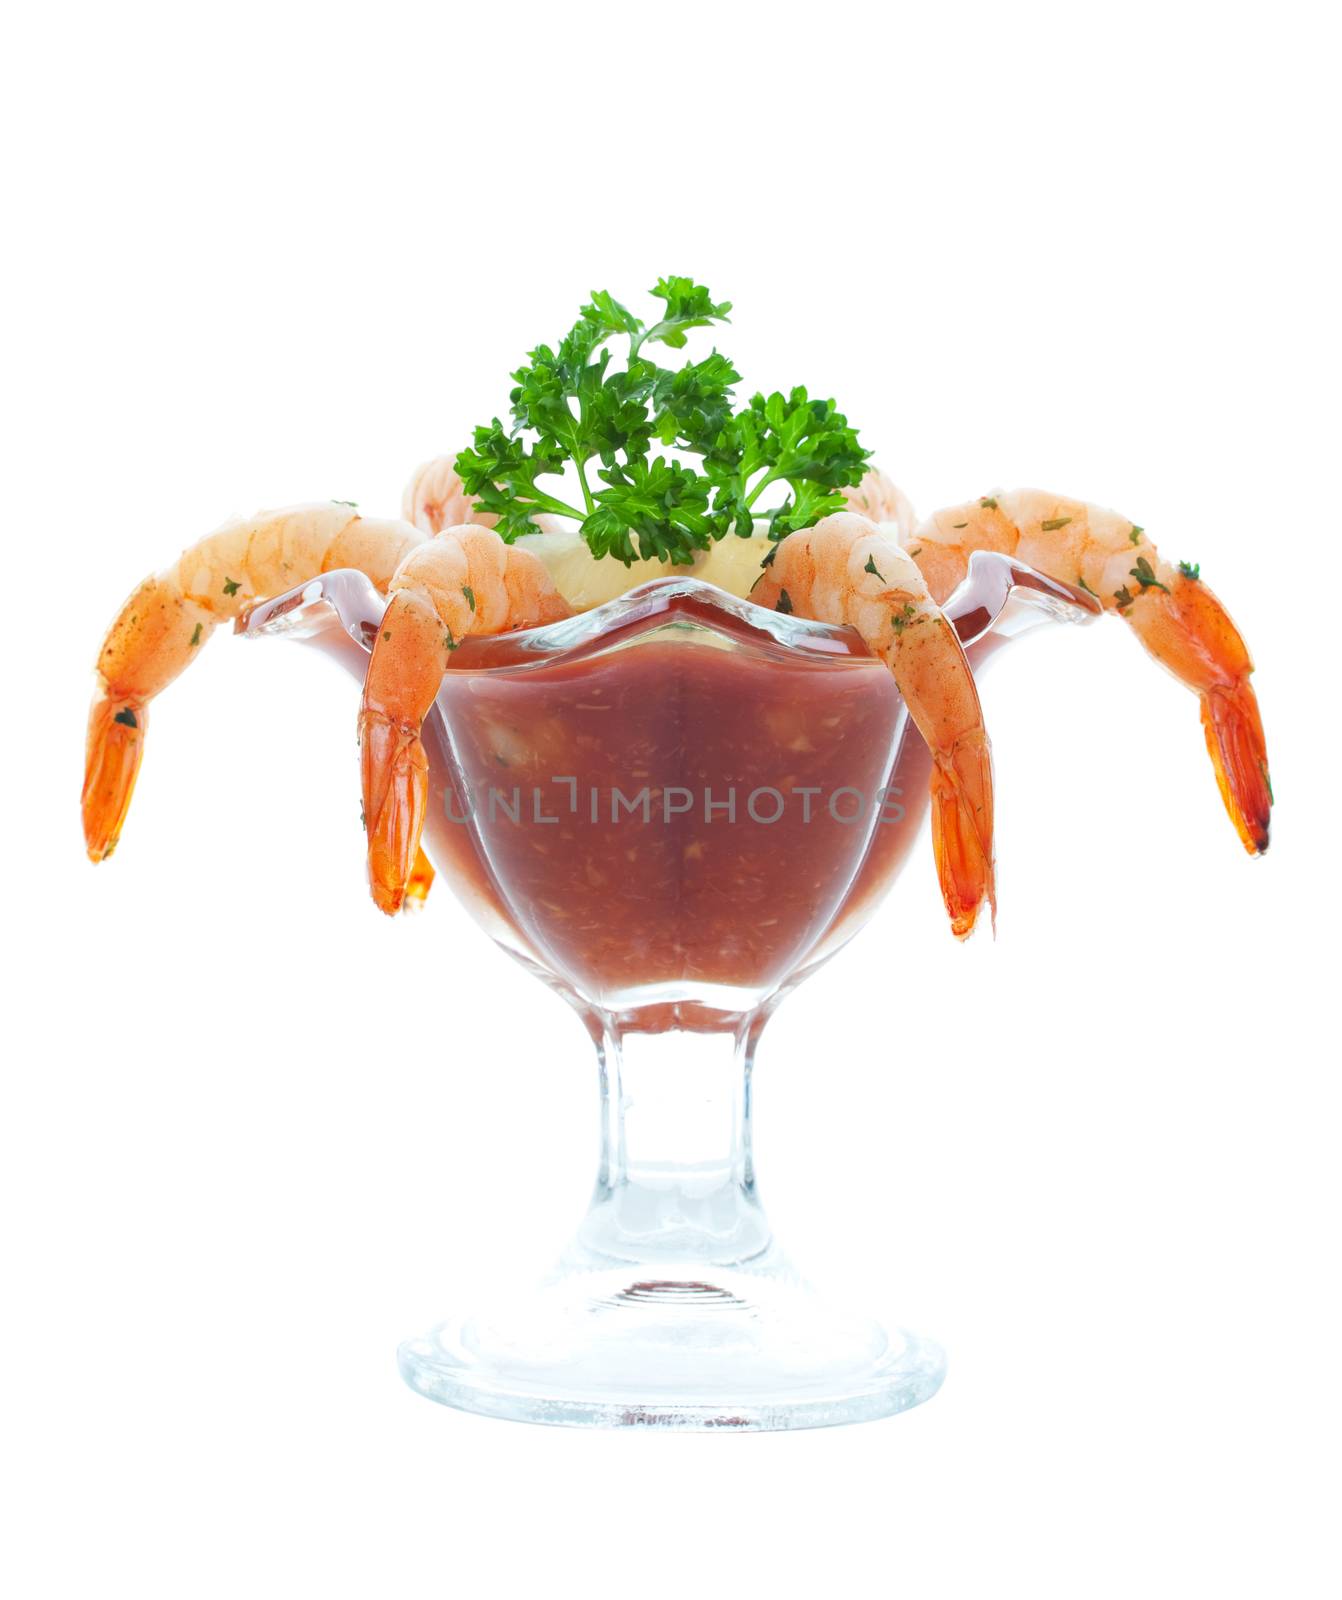 Shrimp Cocktail by songbird839